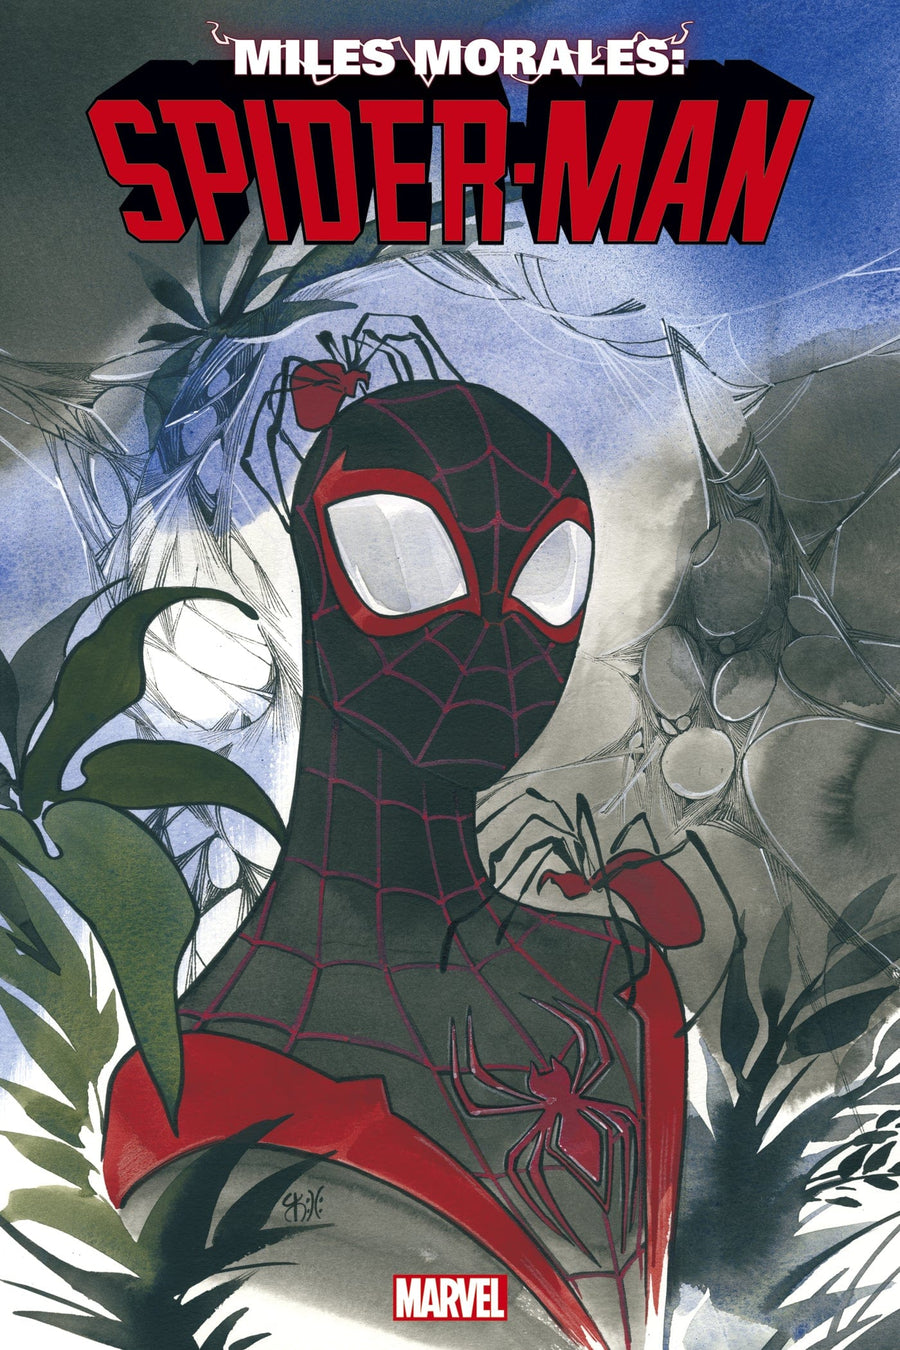 MILES MORALES SPIDER-MAN #39 PEACH MOMOKO 616 Virgin Variant – The